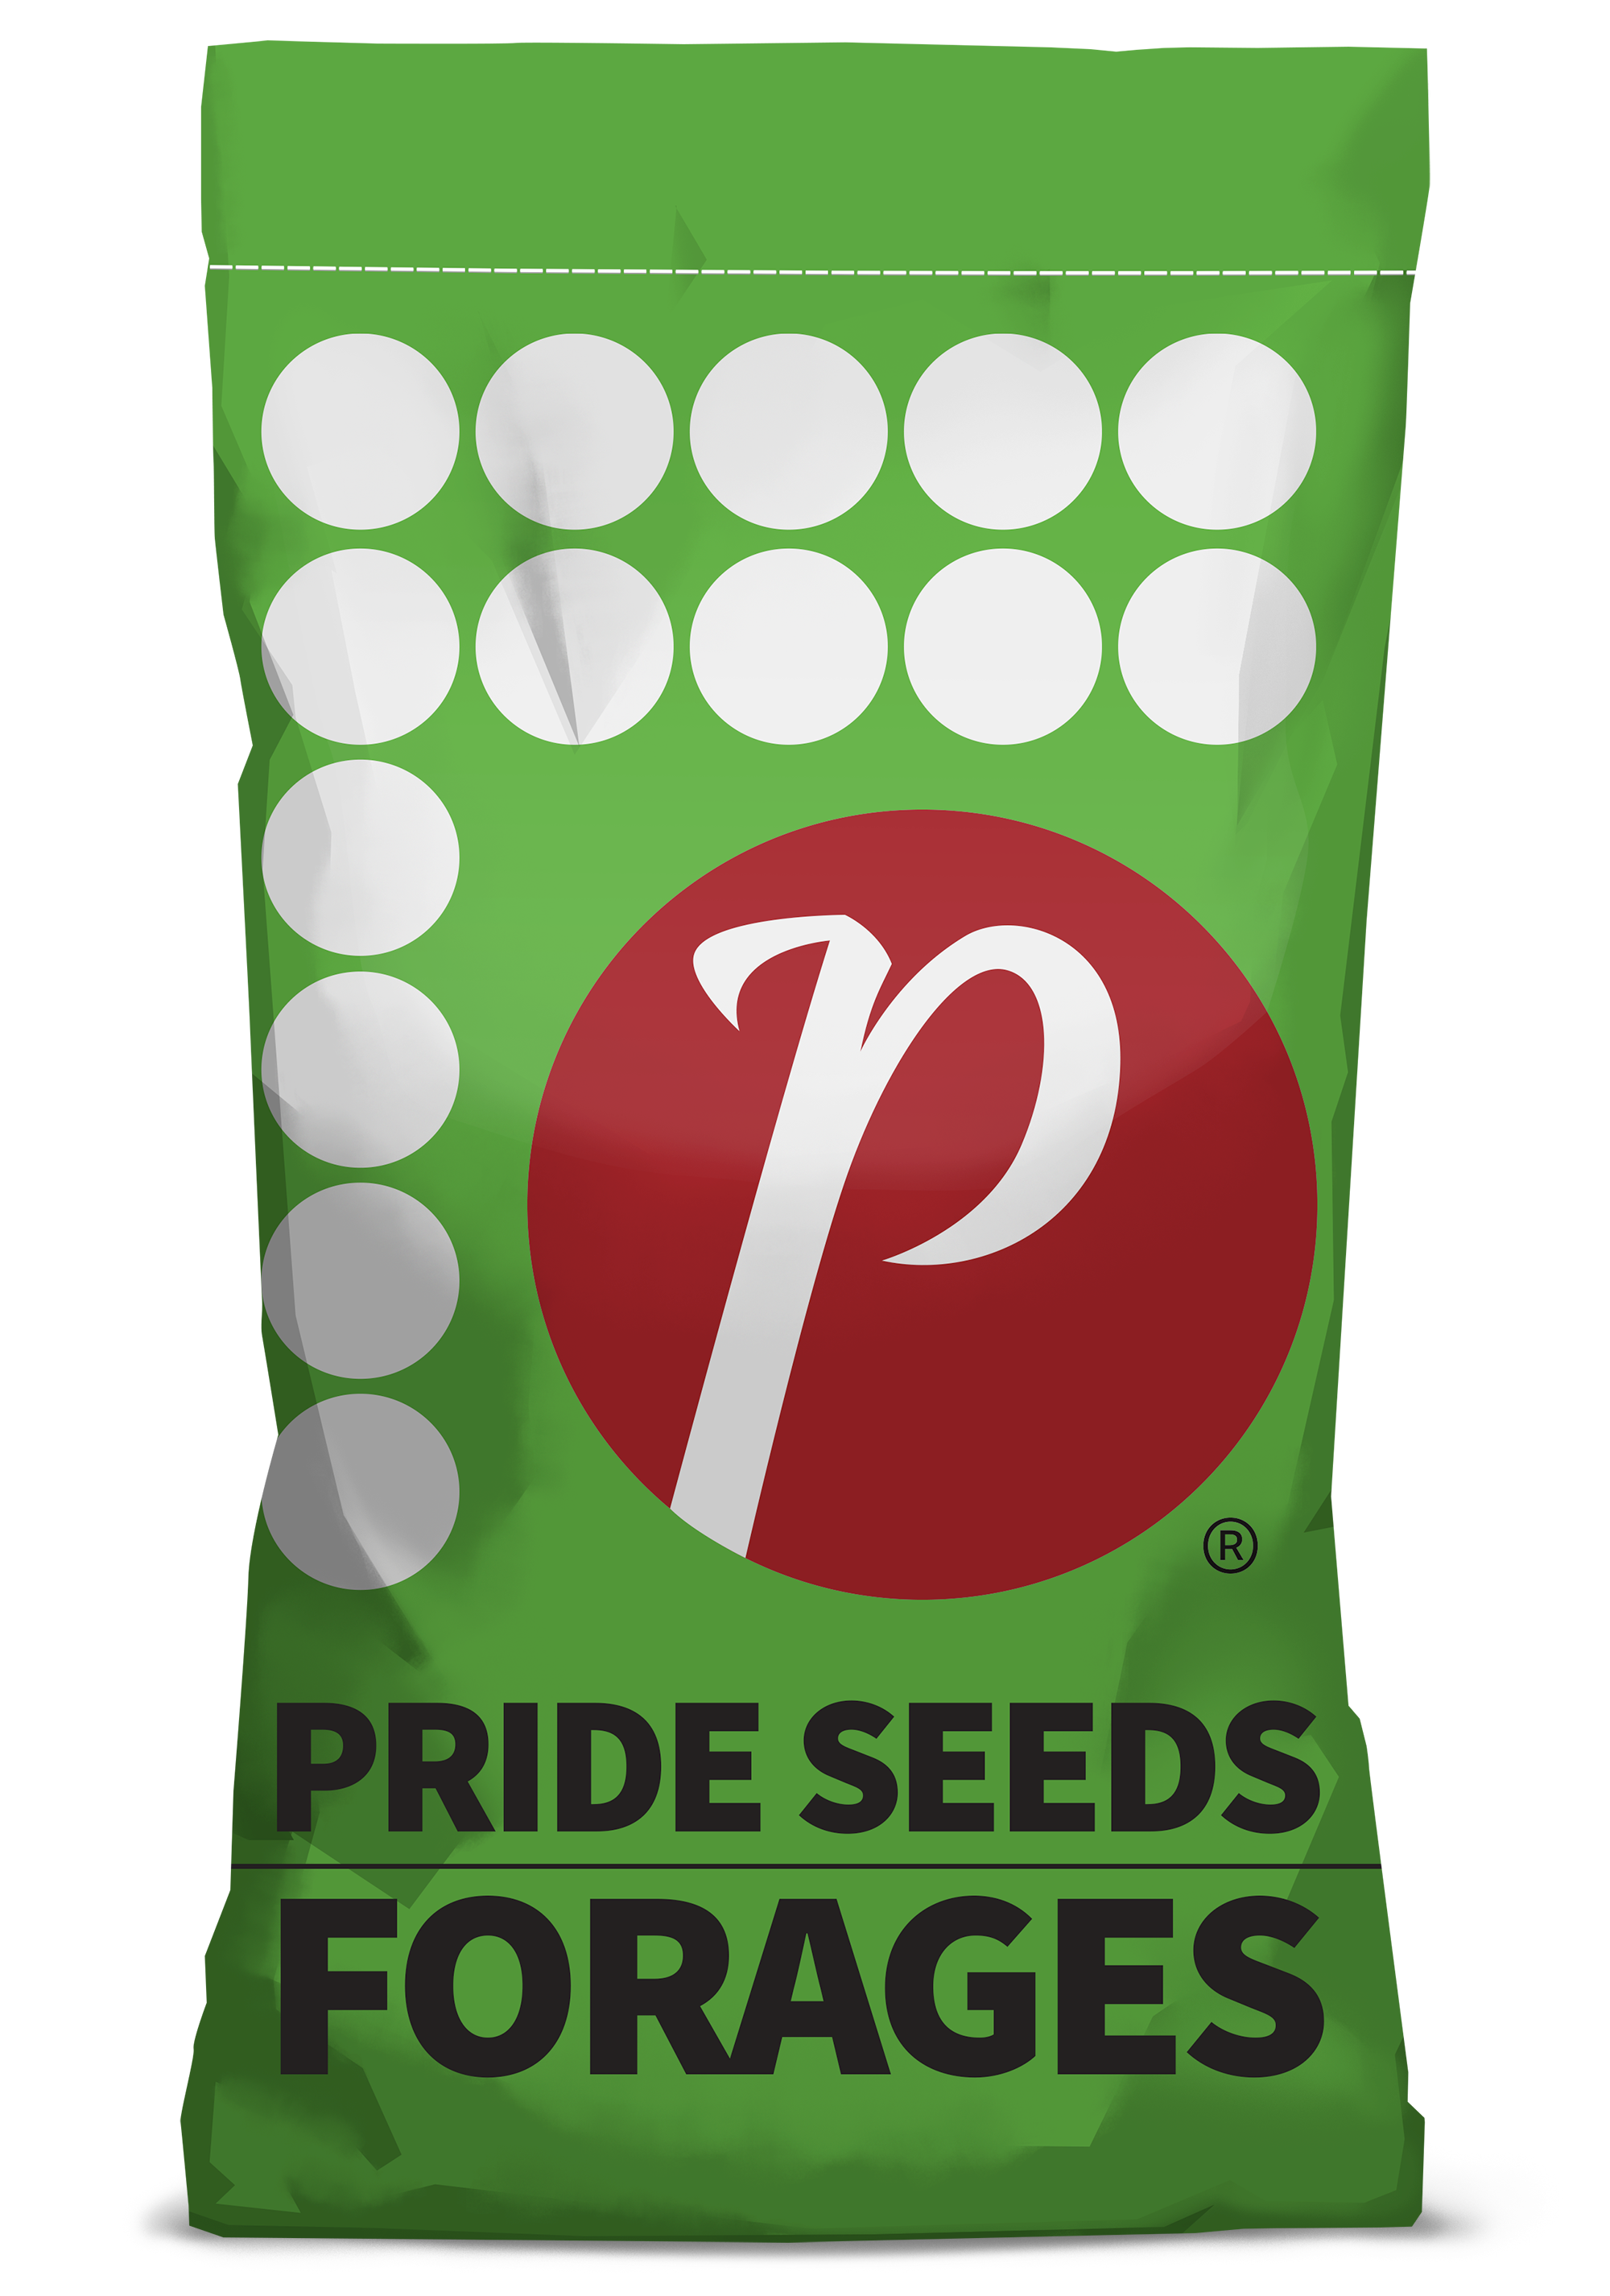 PRIDE Seeds Silage Corn Seed Bag